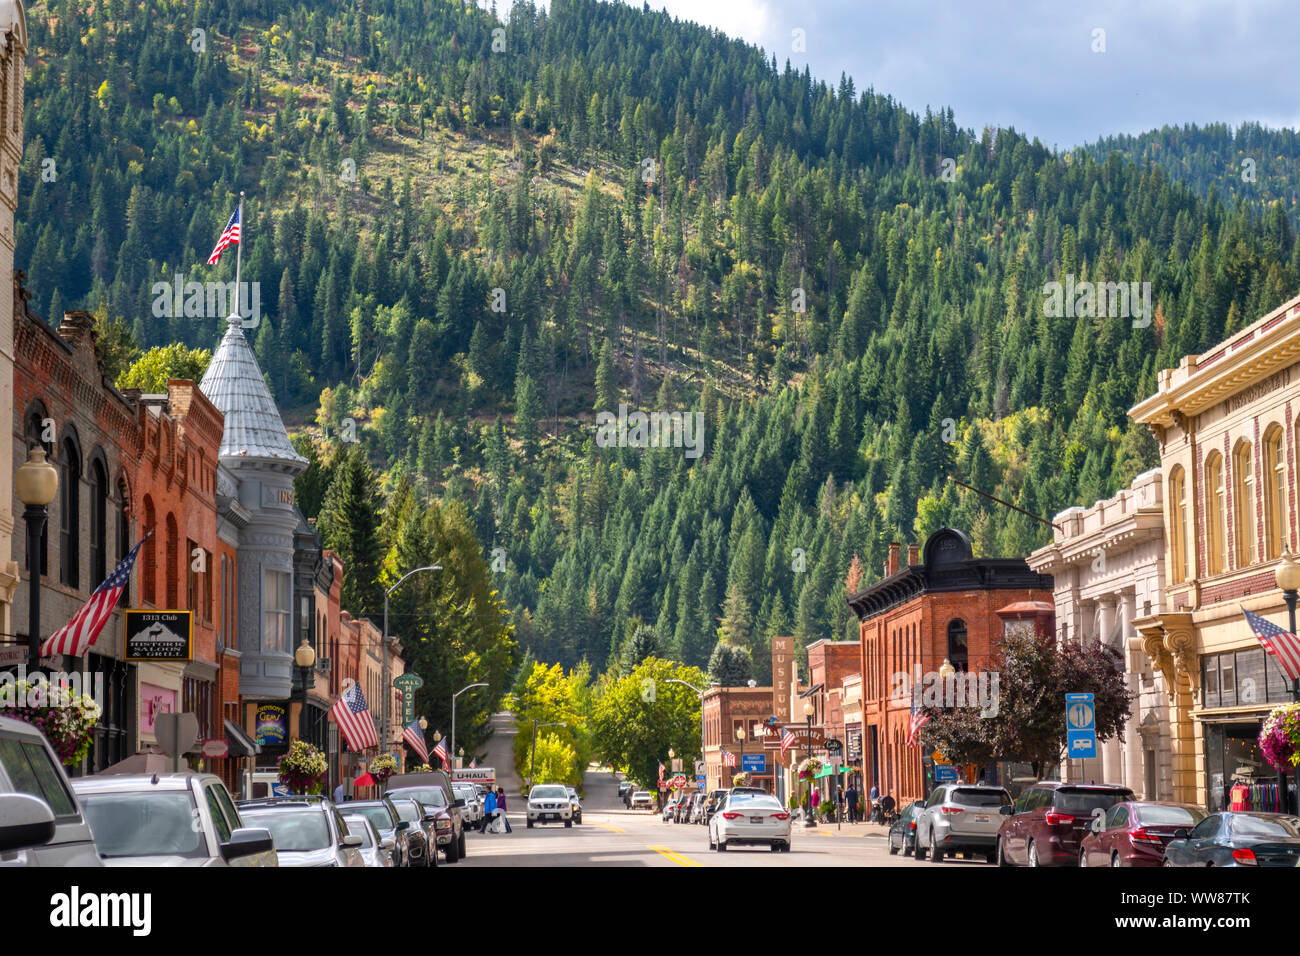 La calle principal que corre a través de la histórica ciudad minera de 1800 de Wallace, Idaho, parte del Superfund en Silver Valley, Idaho, USA. Foto de stock